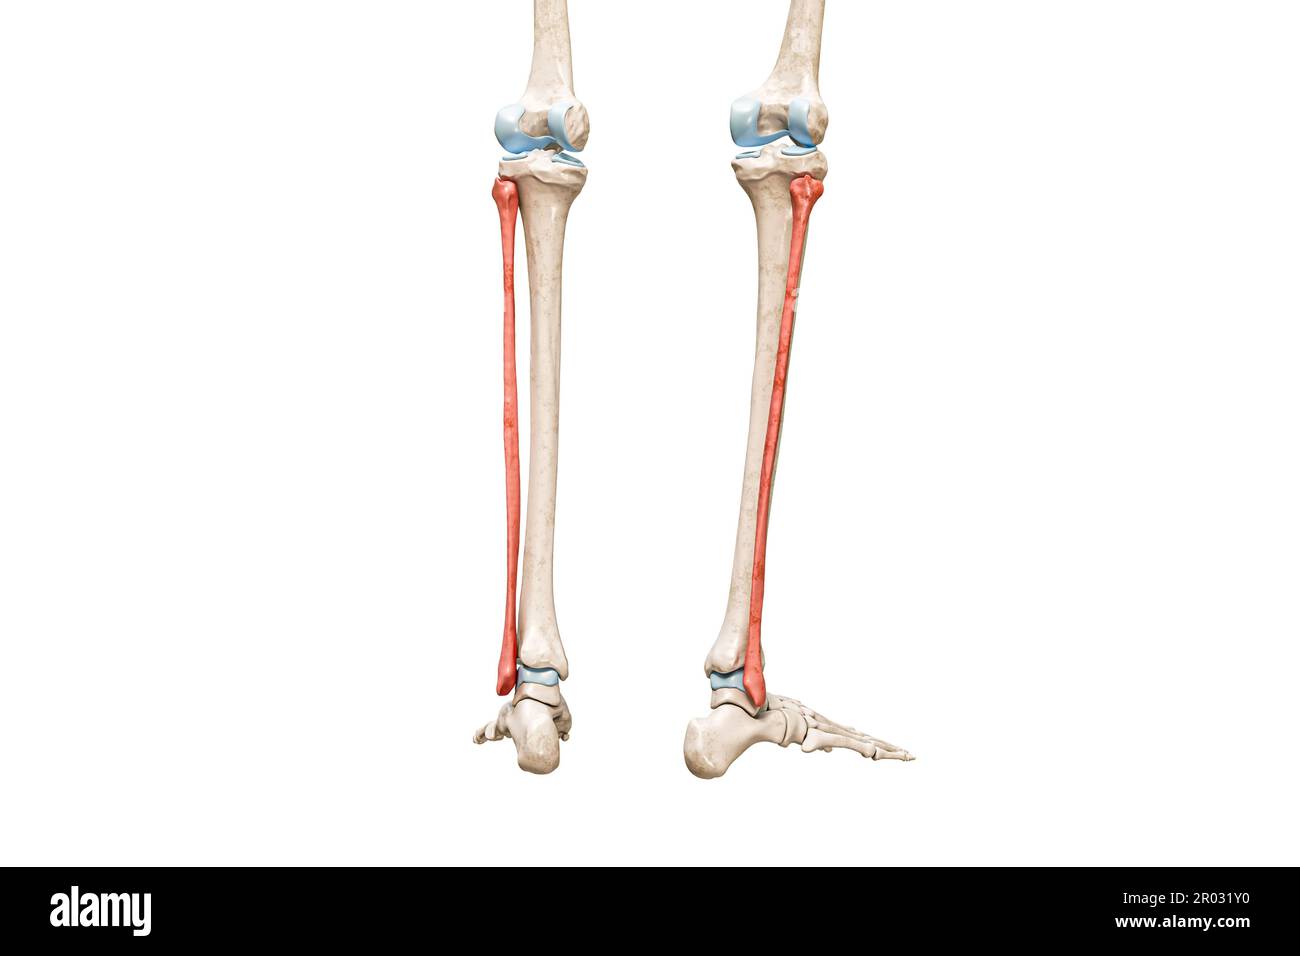 Vista posteriore di fibula bones in rosso 3D rendering illustrazione isolata su bianco con spazio di copia. Scheletro umano e anatomia delle gambe, diagramma medico, oste Foto Stock